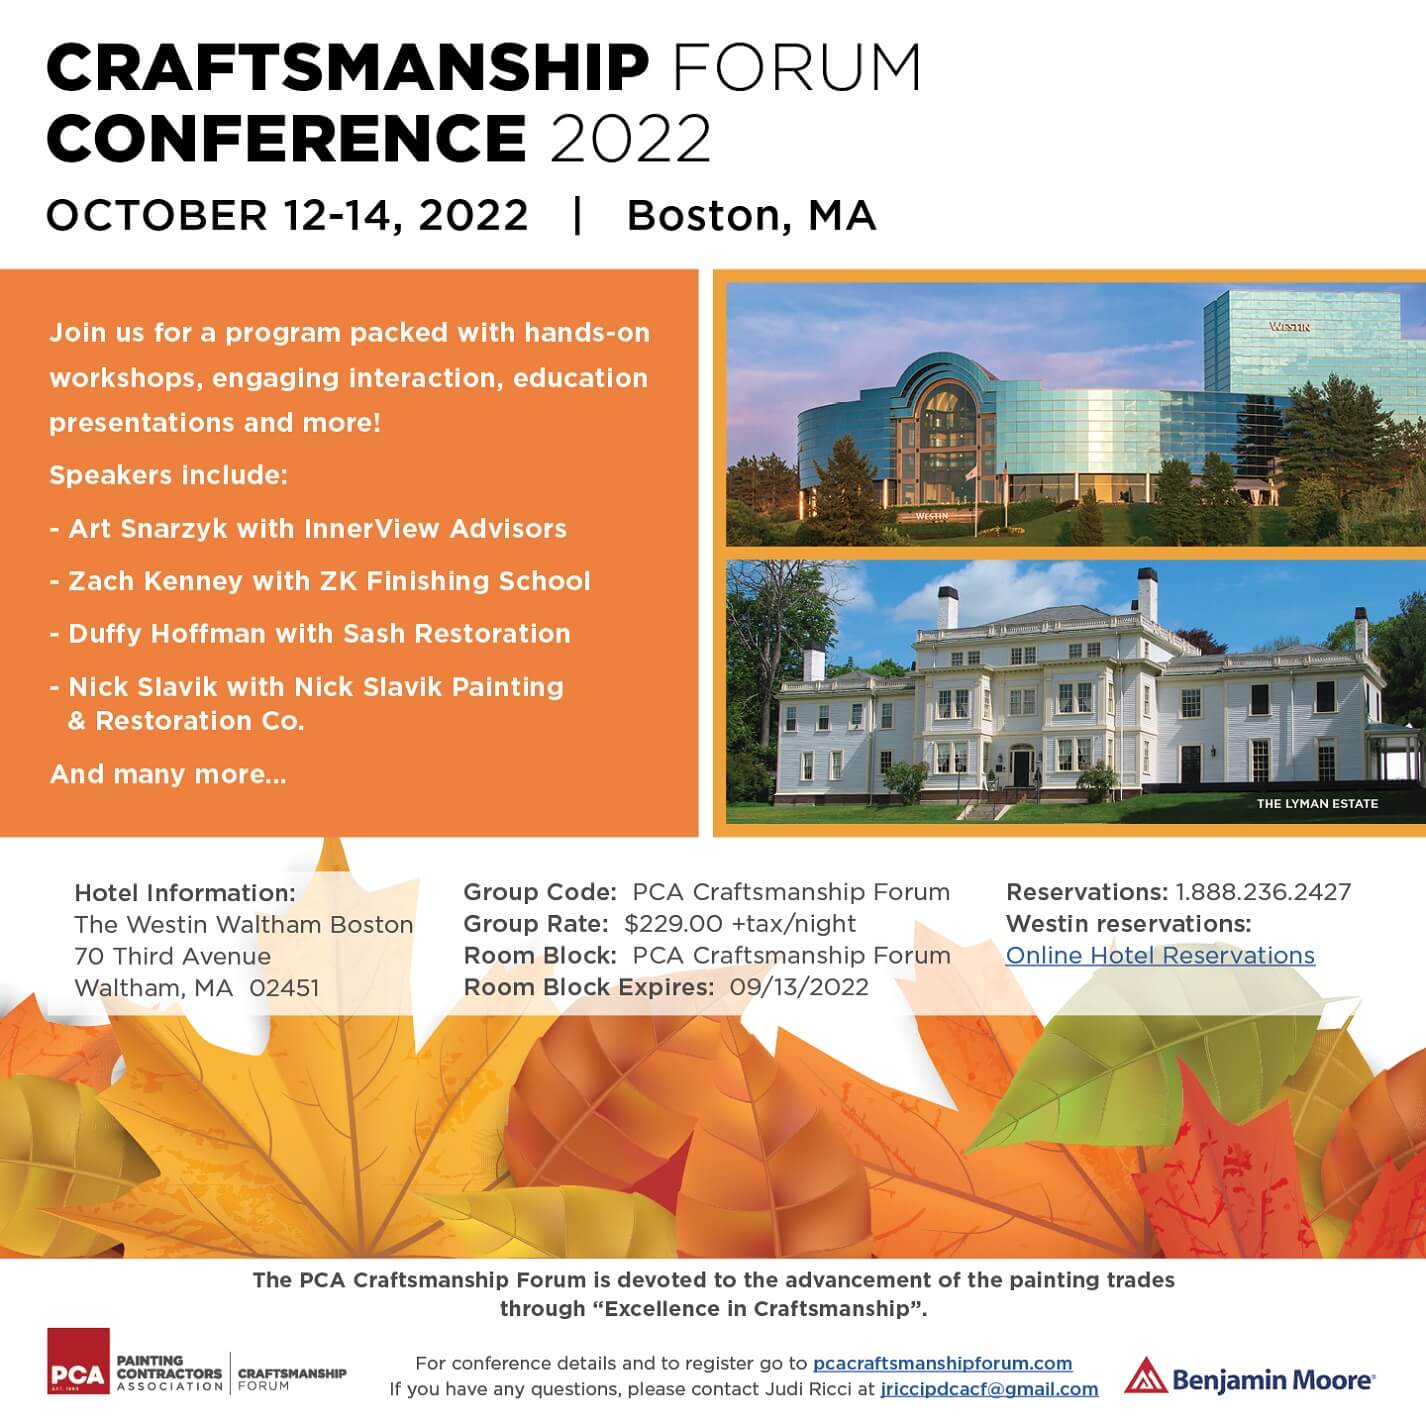 2022 Craftsmanship Forum Conference